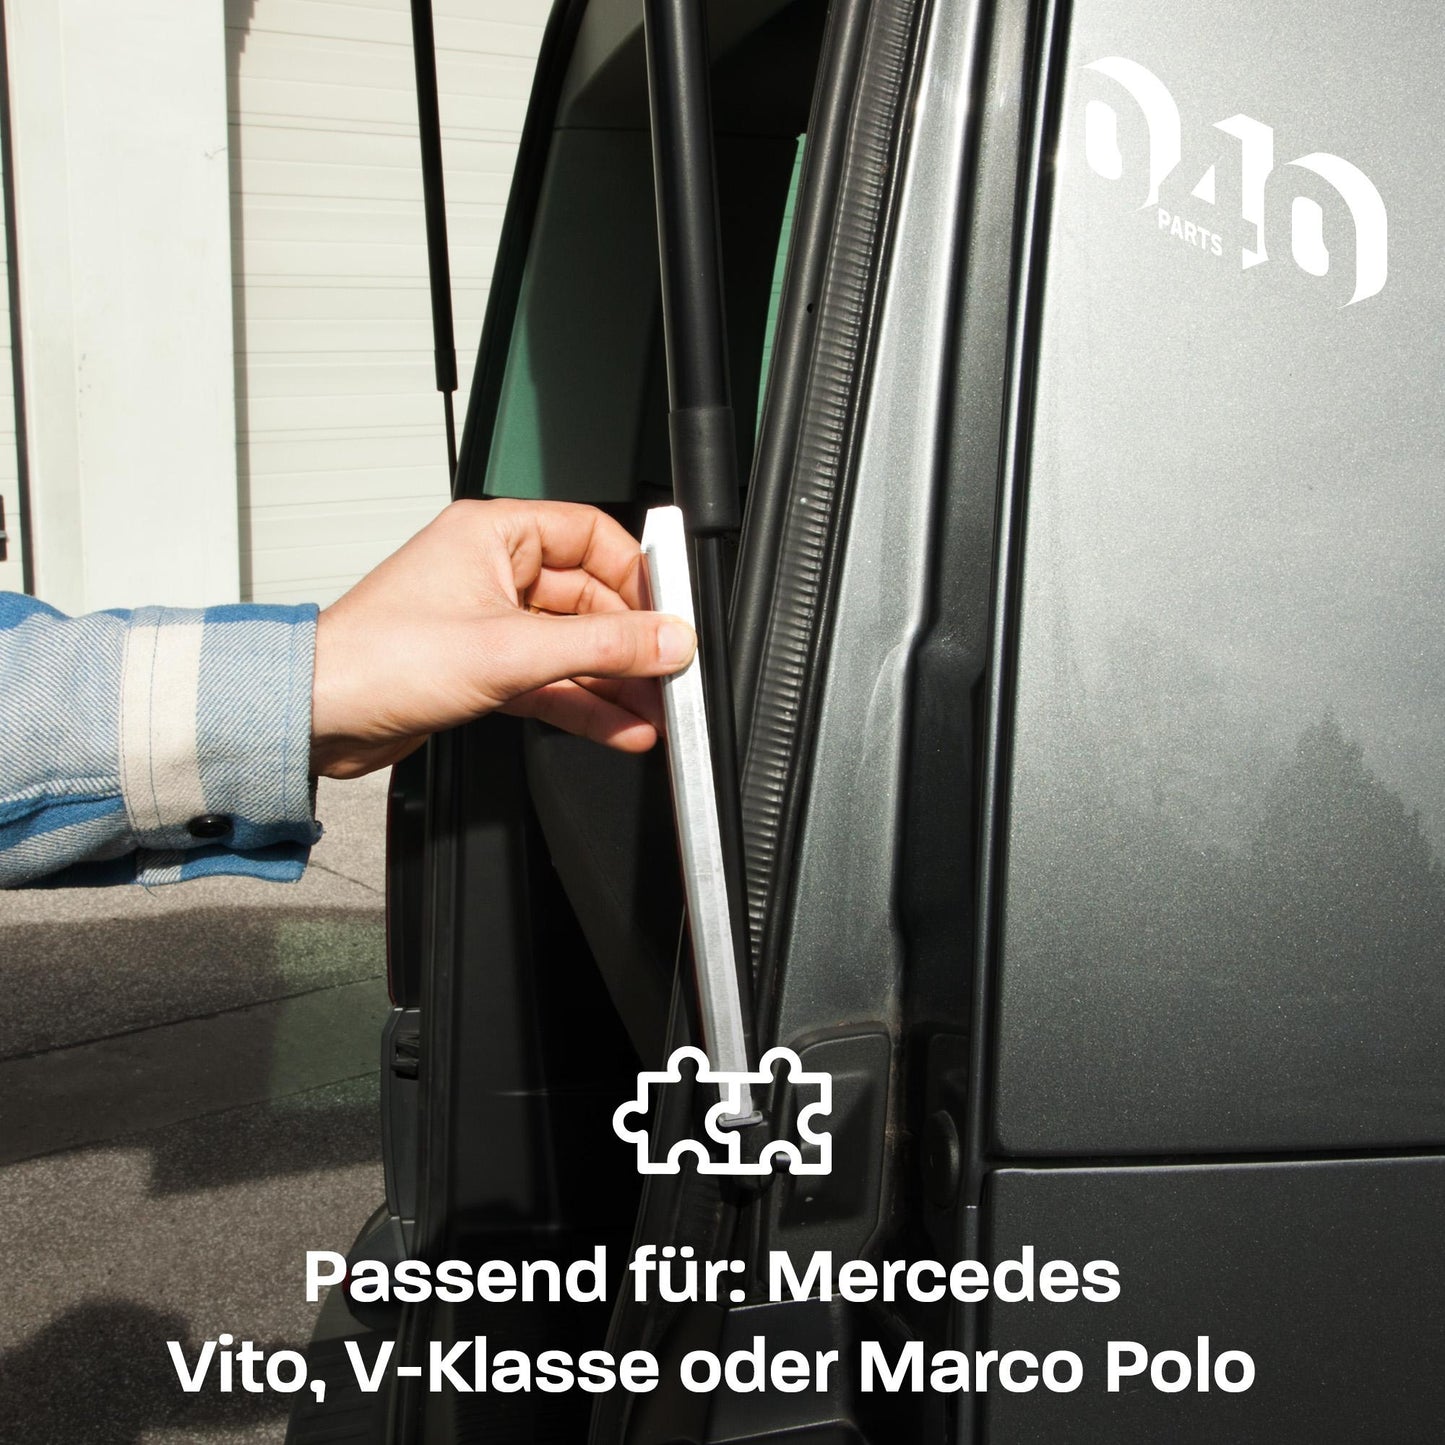 040Parts Verbesserter Heckklappenaufsteller kompatibel für Mercedes V-Klasse, Vito und Marco Polo Modelle - Sichere und komfortable Heckklappenunterstützung